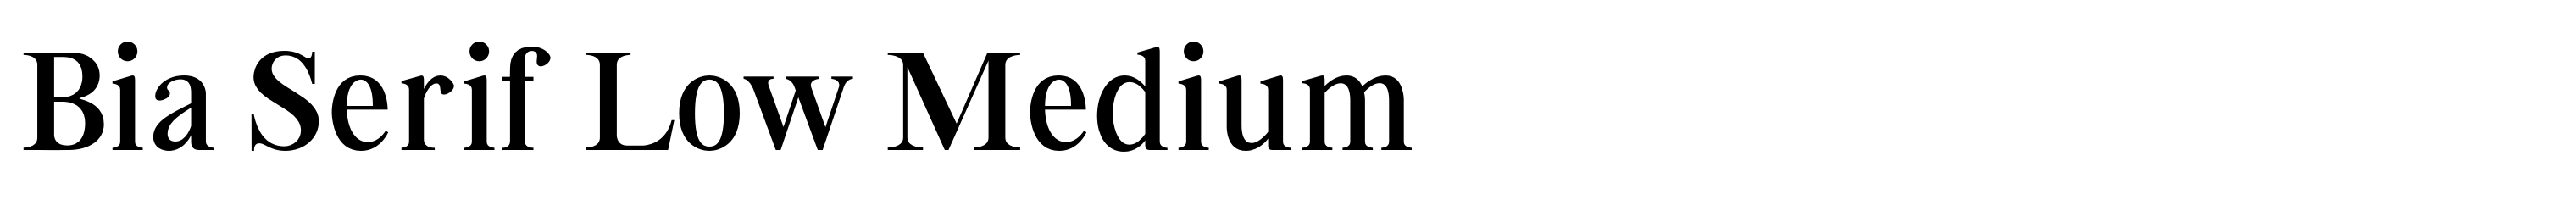 Bia Serif Low Medium